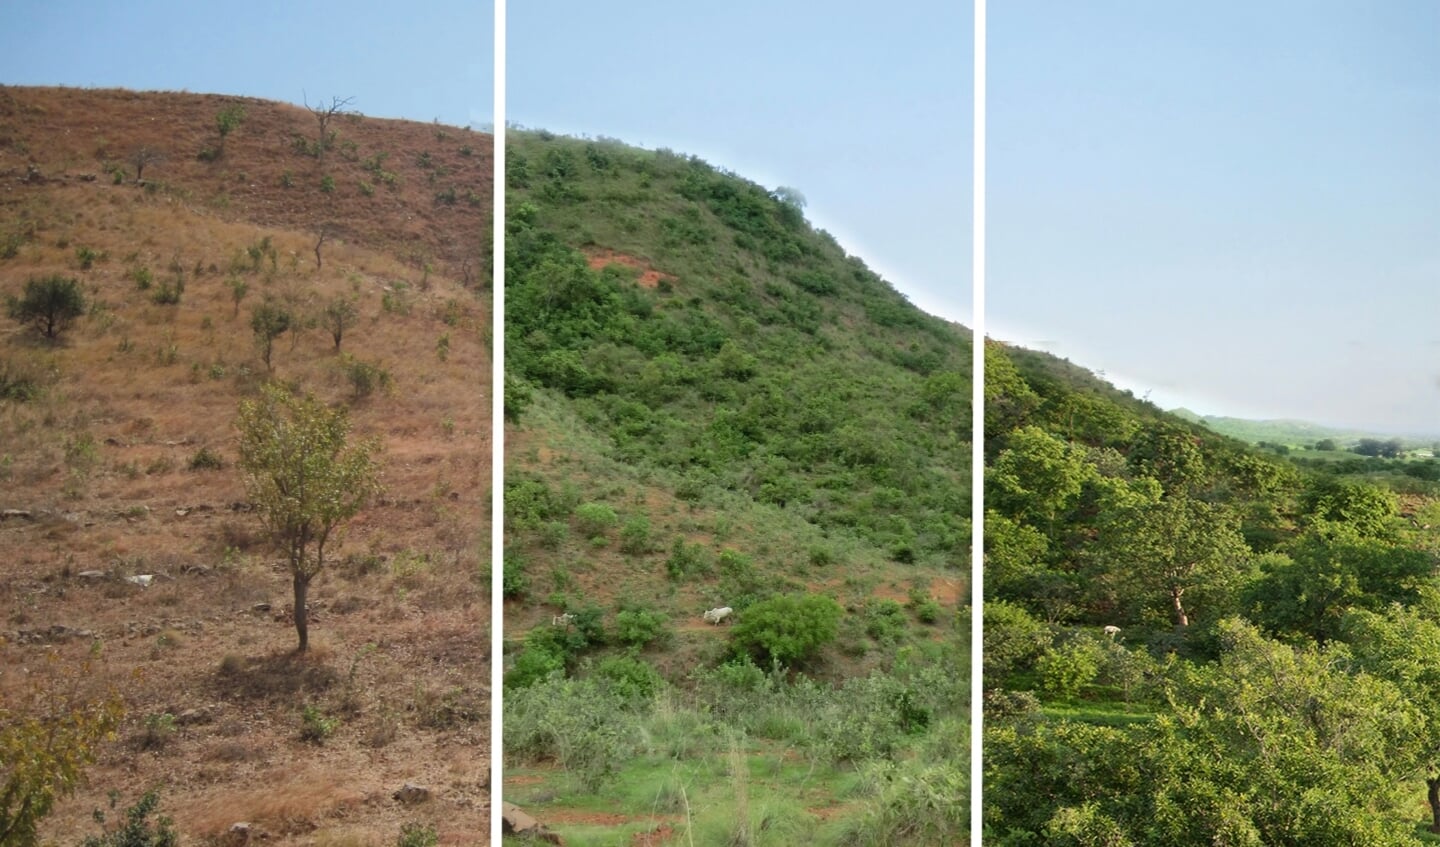 Ook in Ghana wisten boeren via Rinaudo's methode het dorre land (links) te vergroenen (rechts).